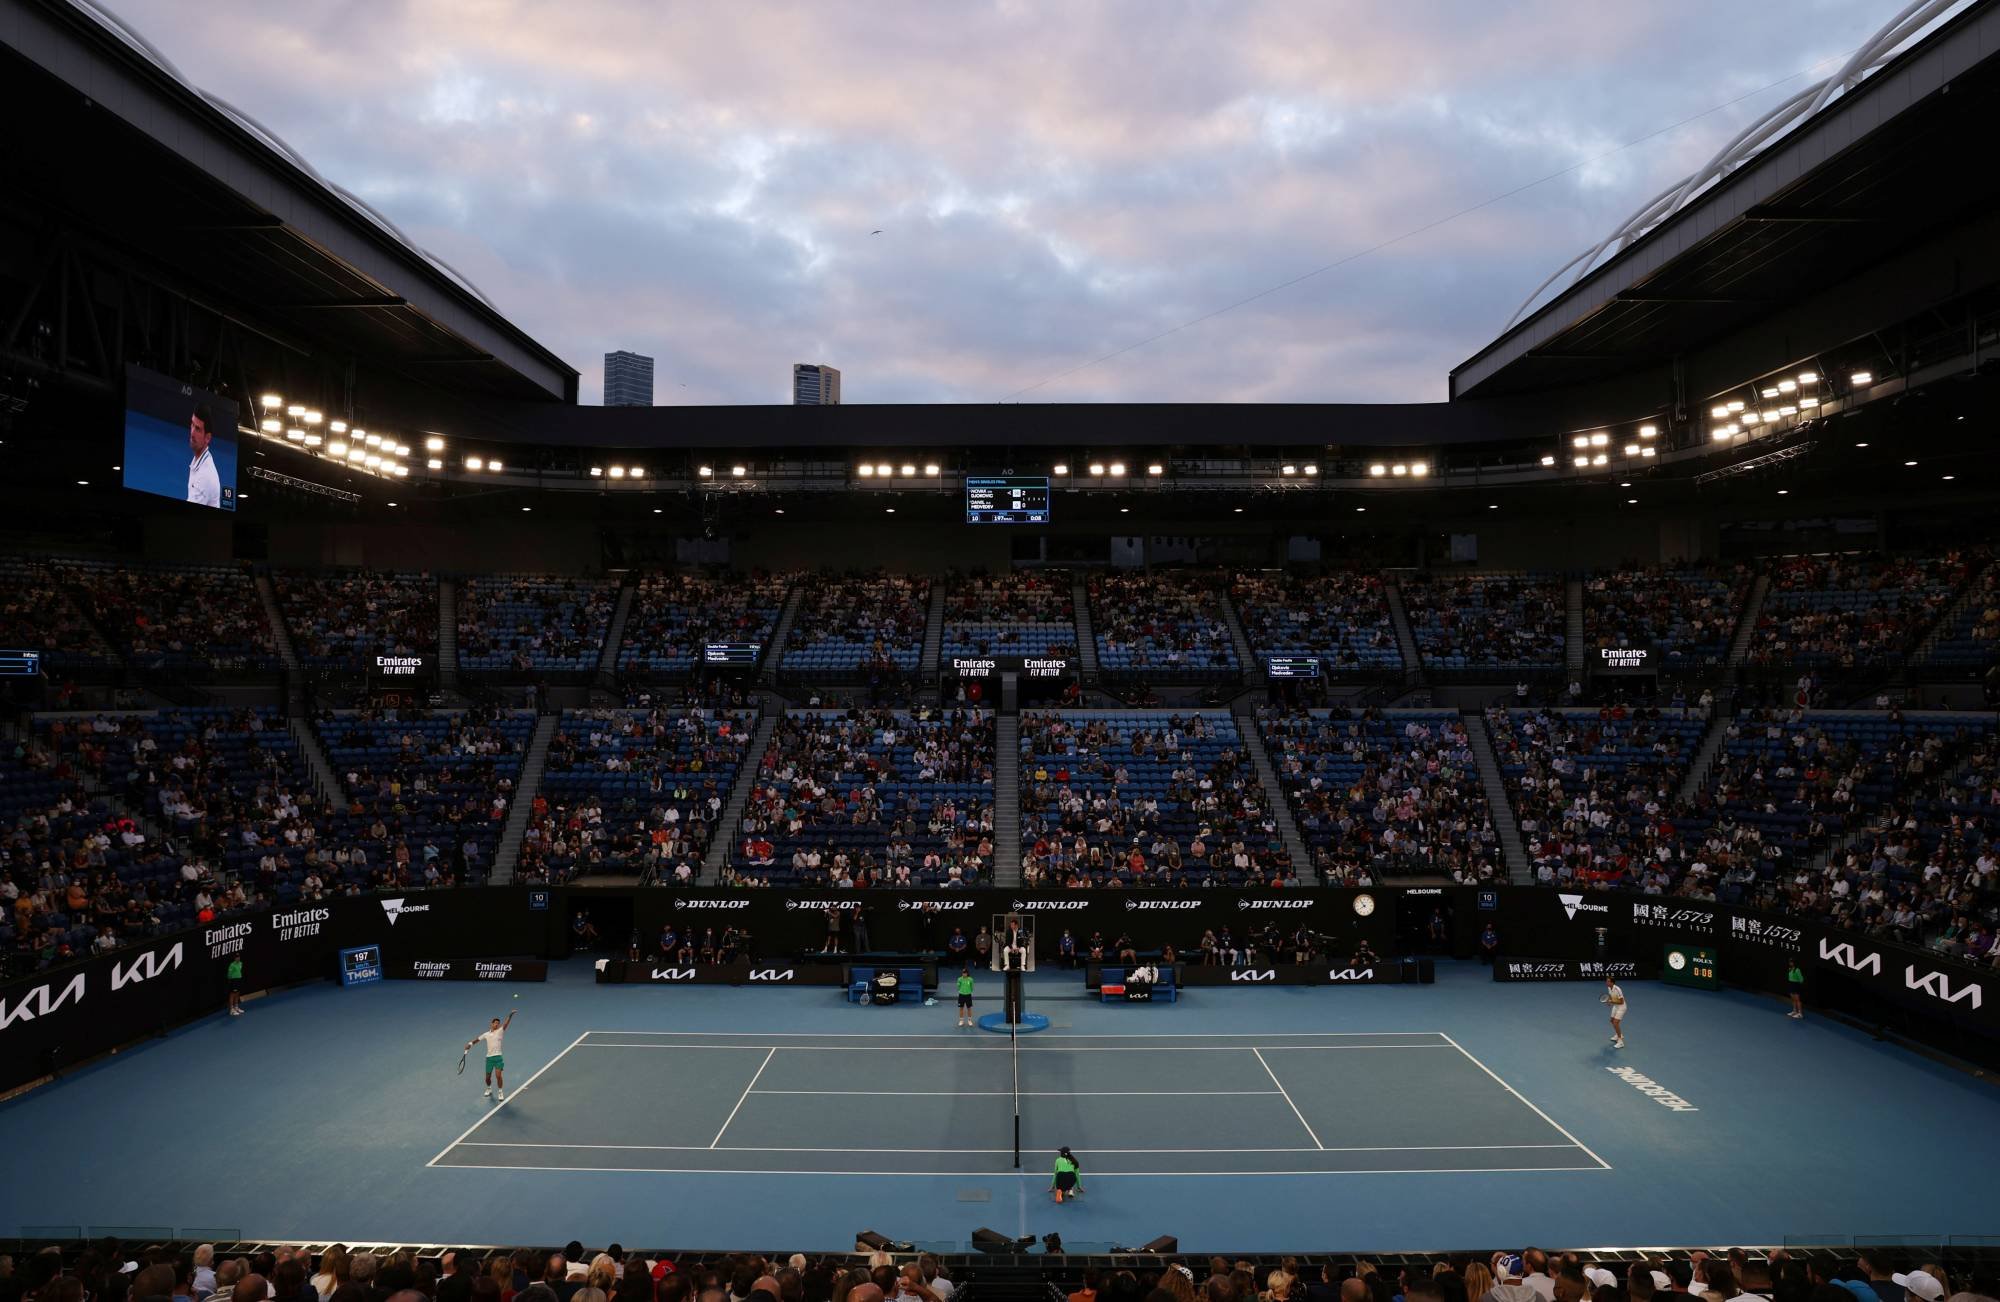  Lucru rar întâlnit în tenis la WTA Adelaide 2: Semifinalele nu s-au mai disputat